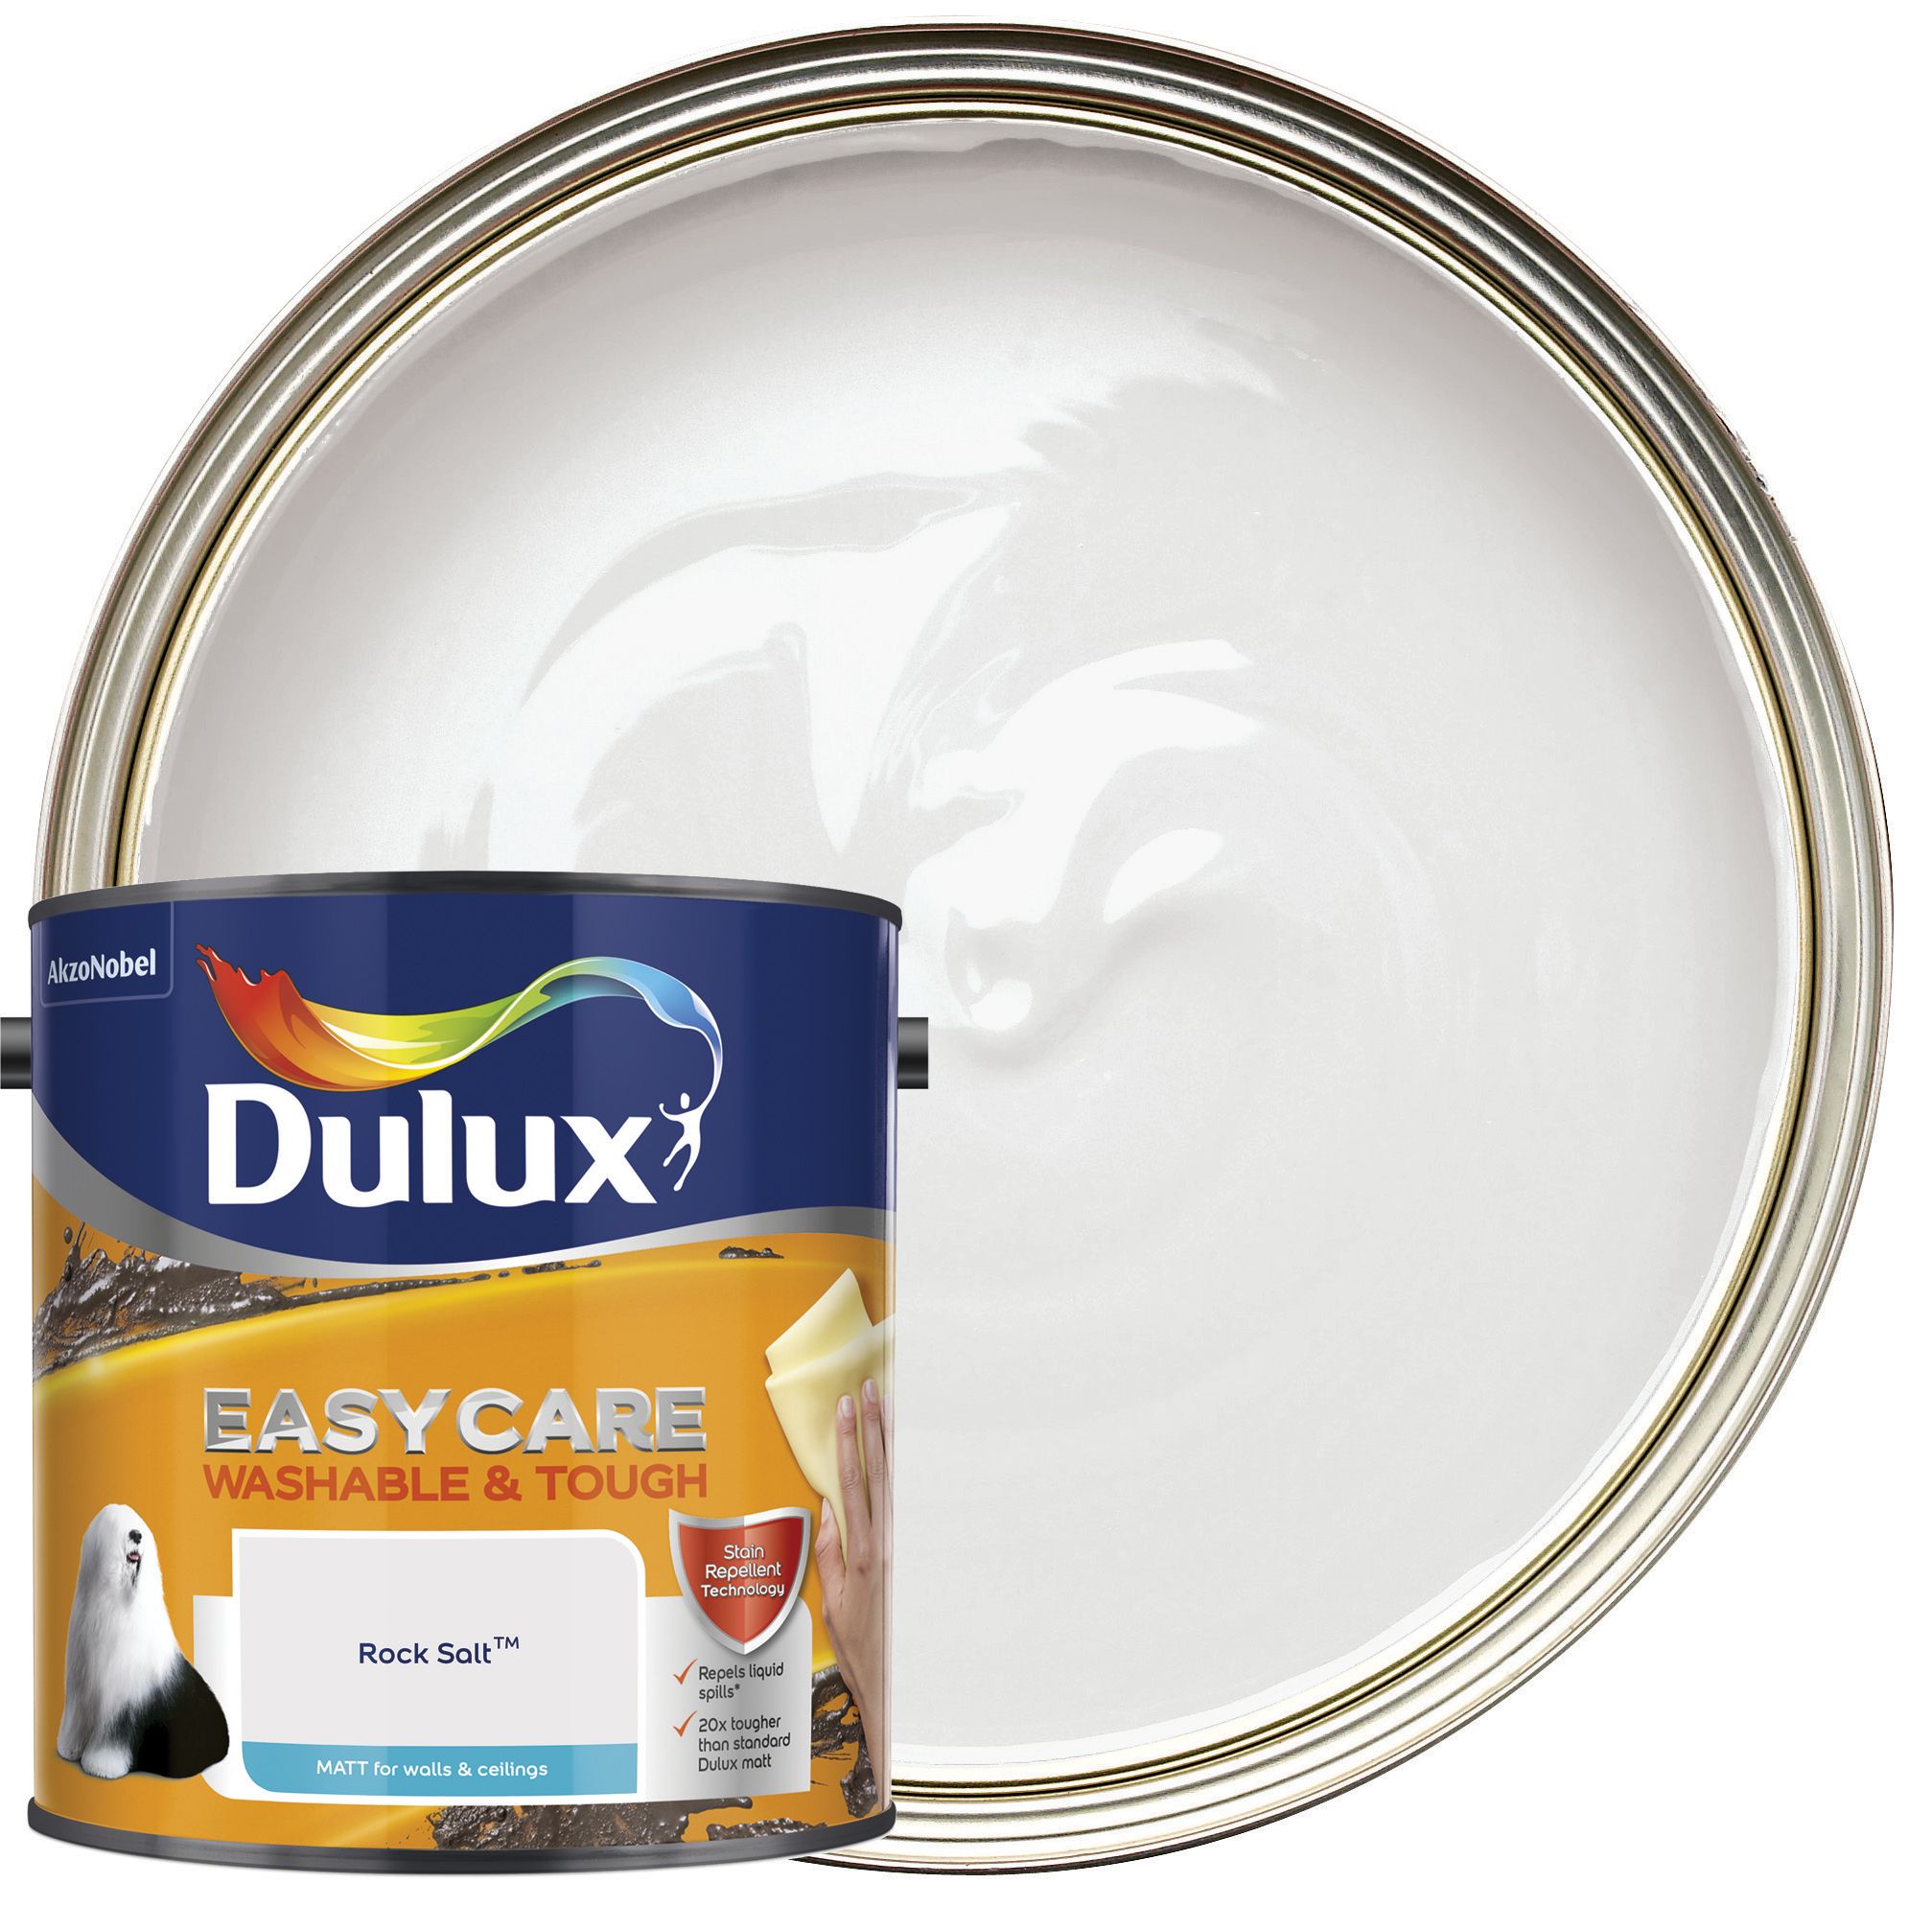 Image of Dulux Easycare Washable & Tough Matt Emulsion Paint - Rock Salt - 2.5L